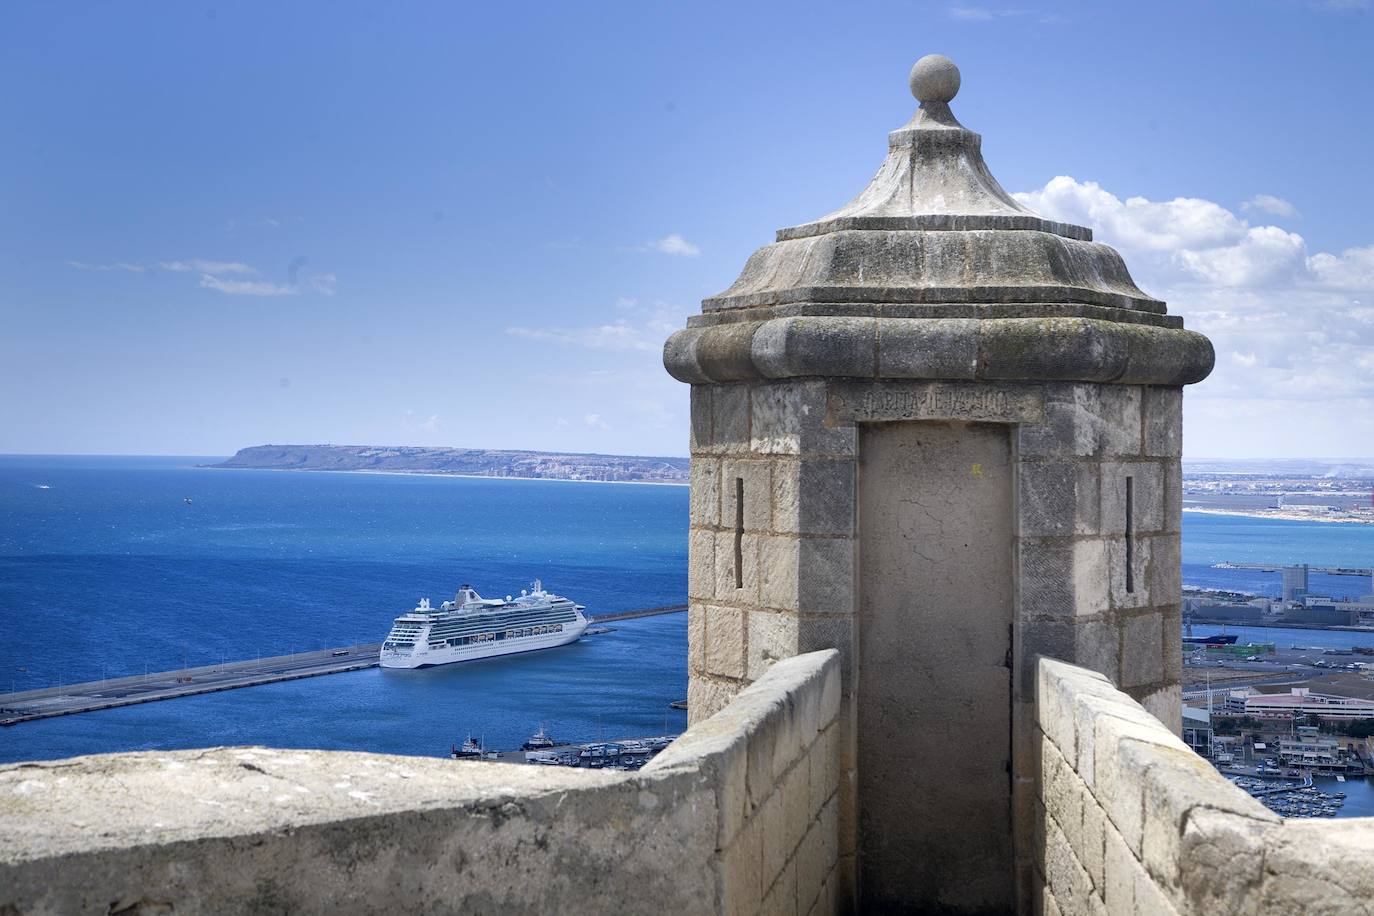 Alicante pone a toda máquina el turismo de cruceros y se integra en la mayor asociación comercial del sector